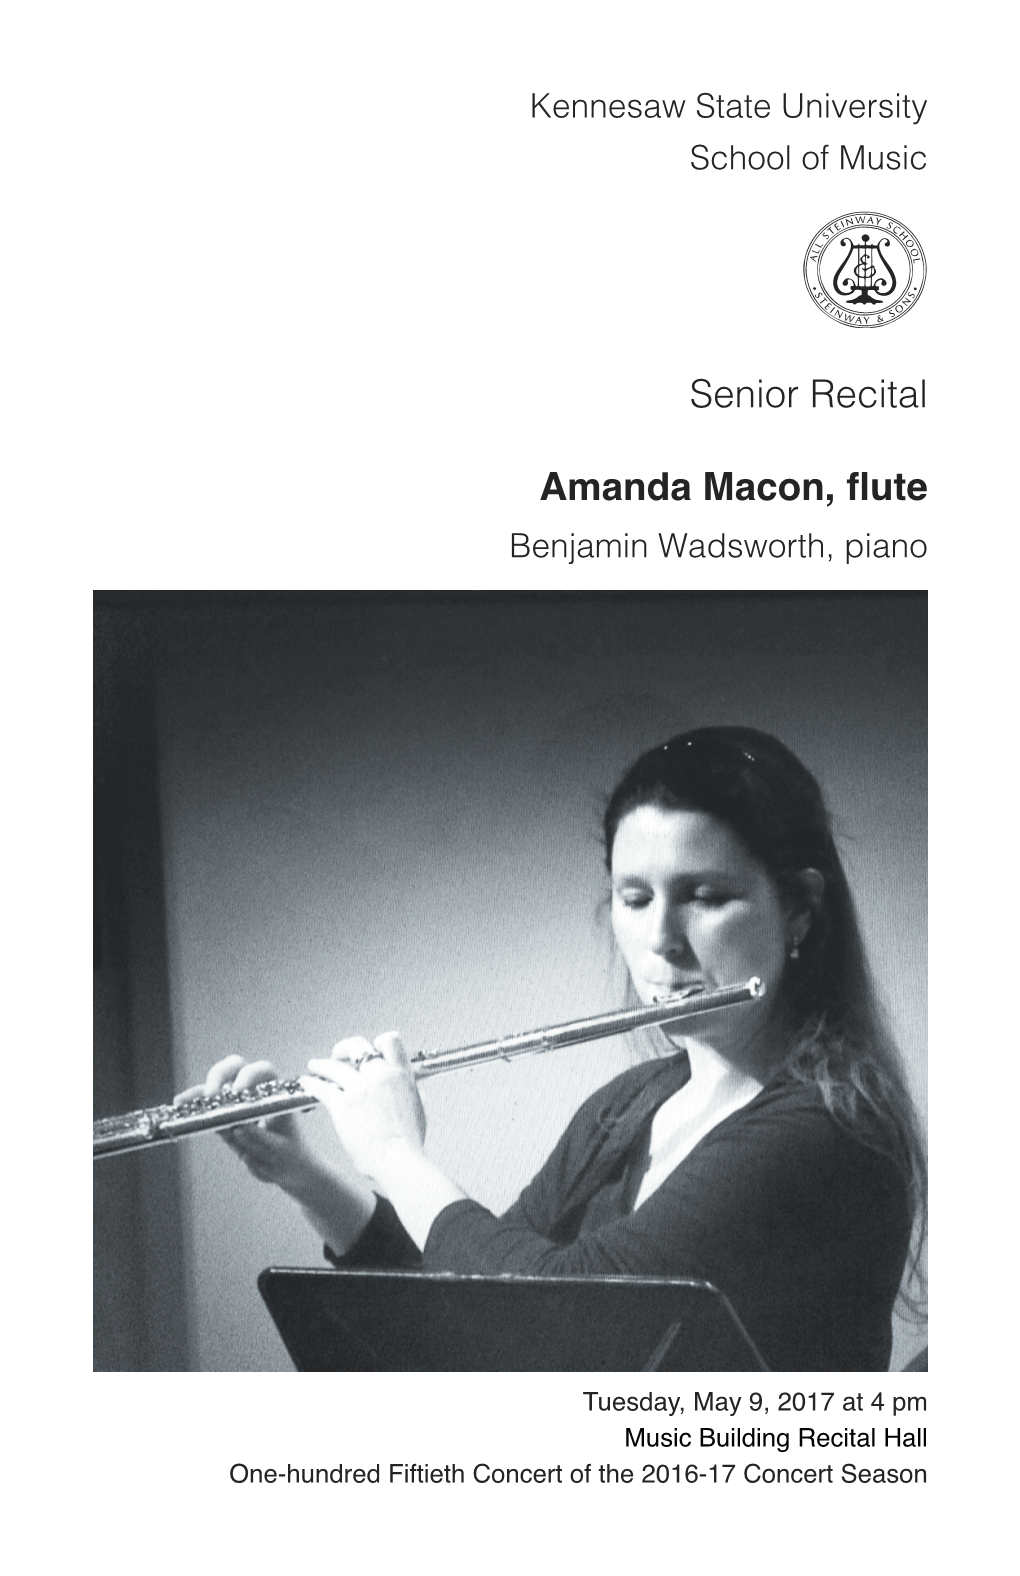 Senior Recital: Amanda Macon, Flute